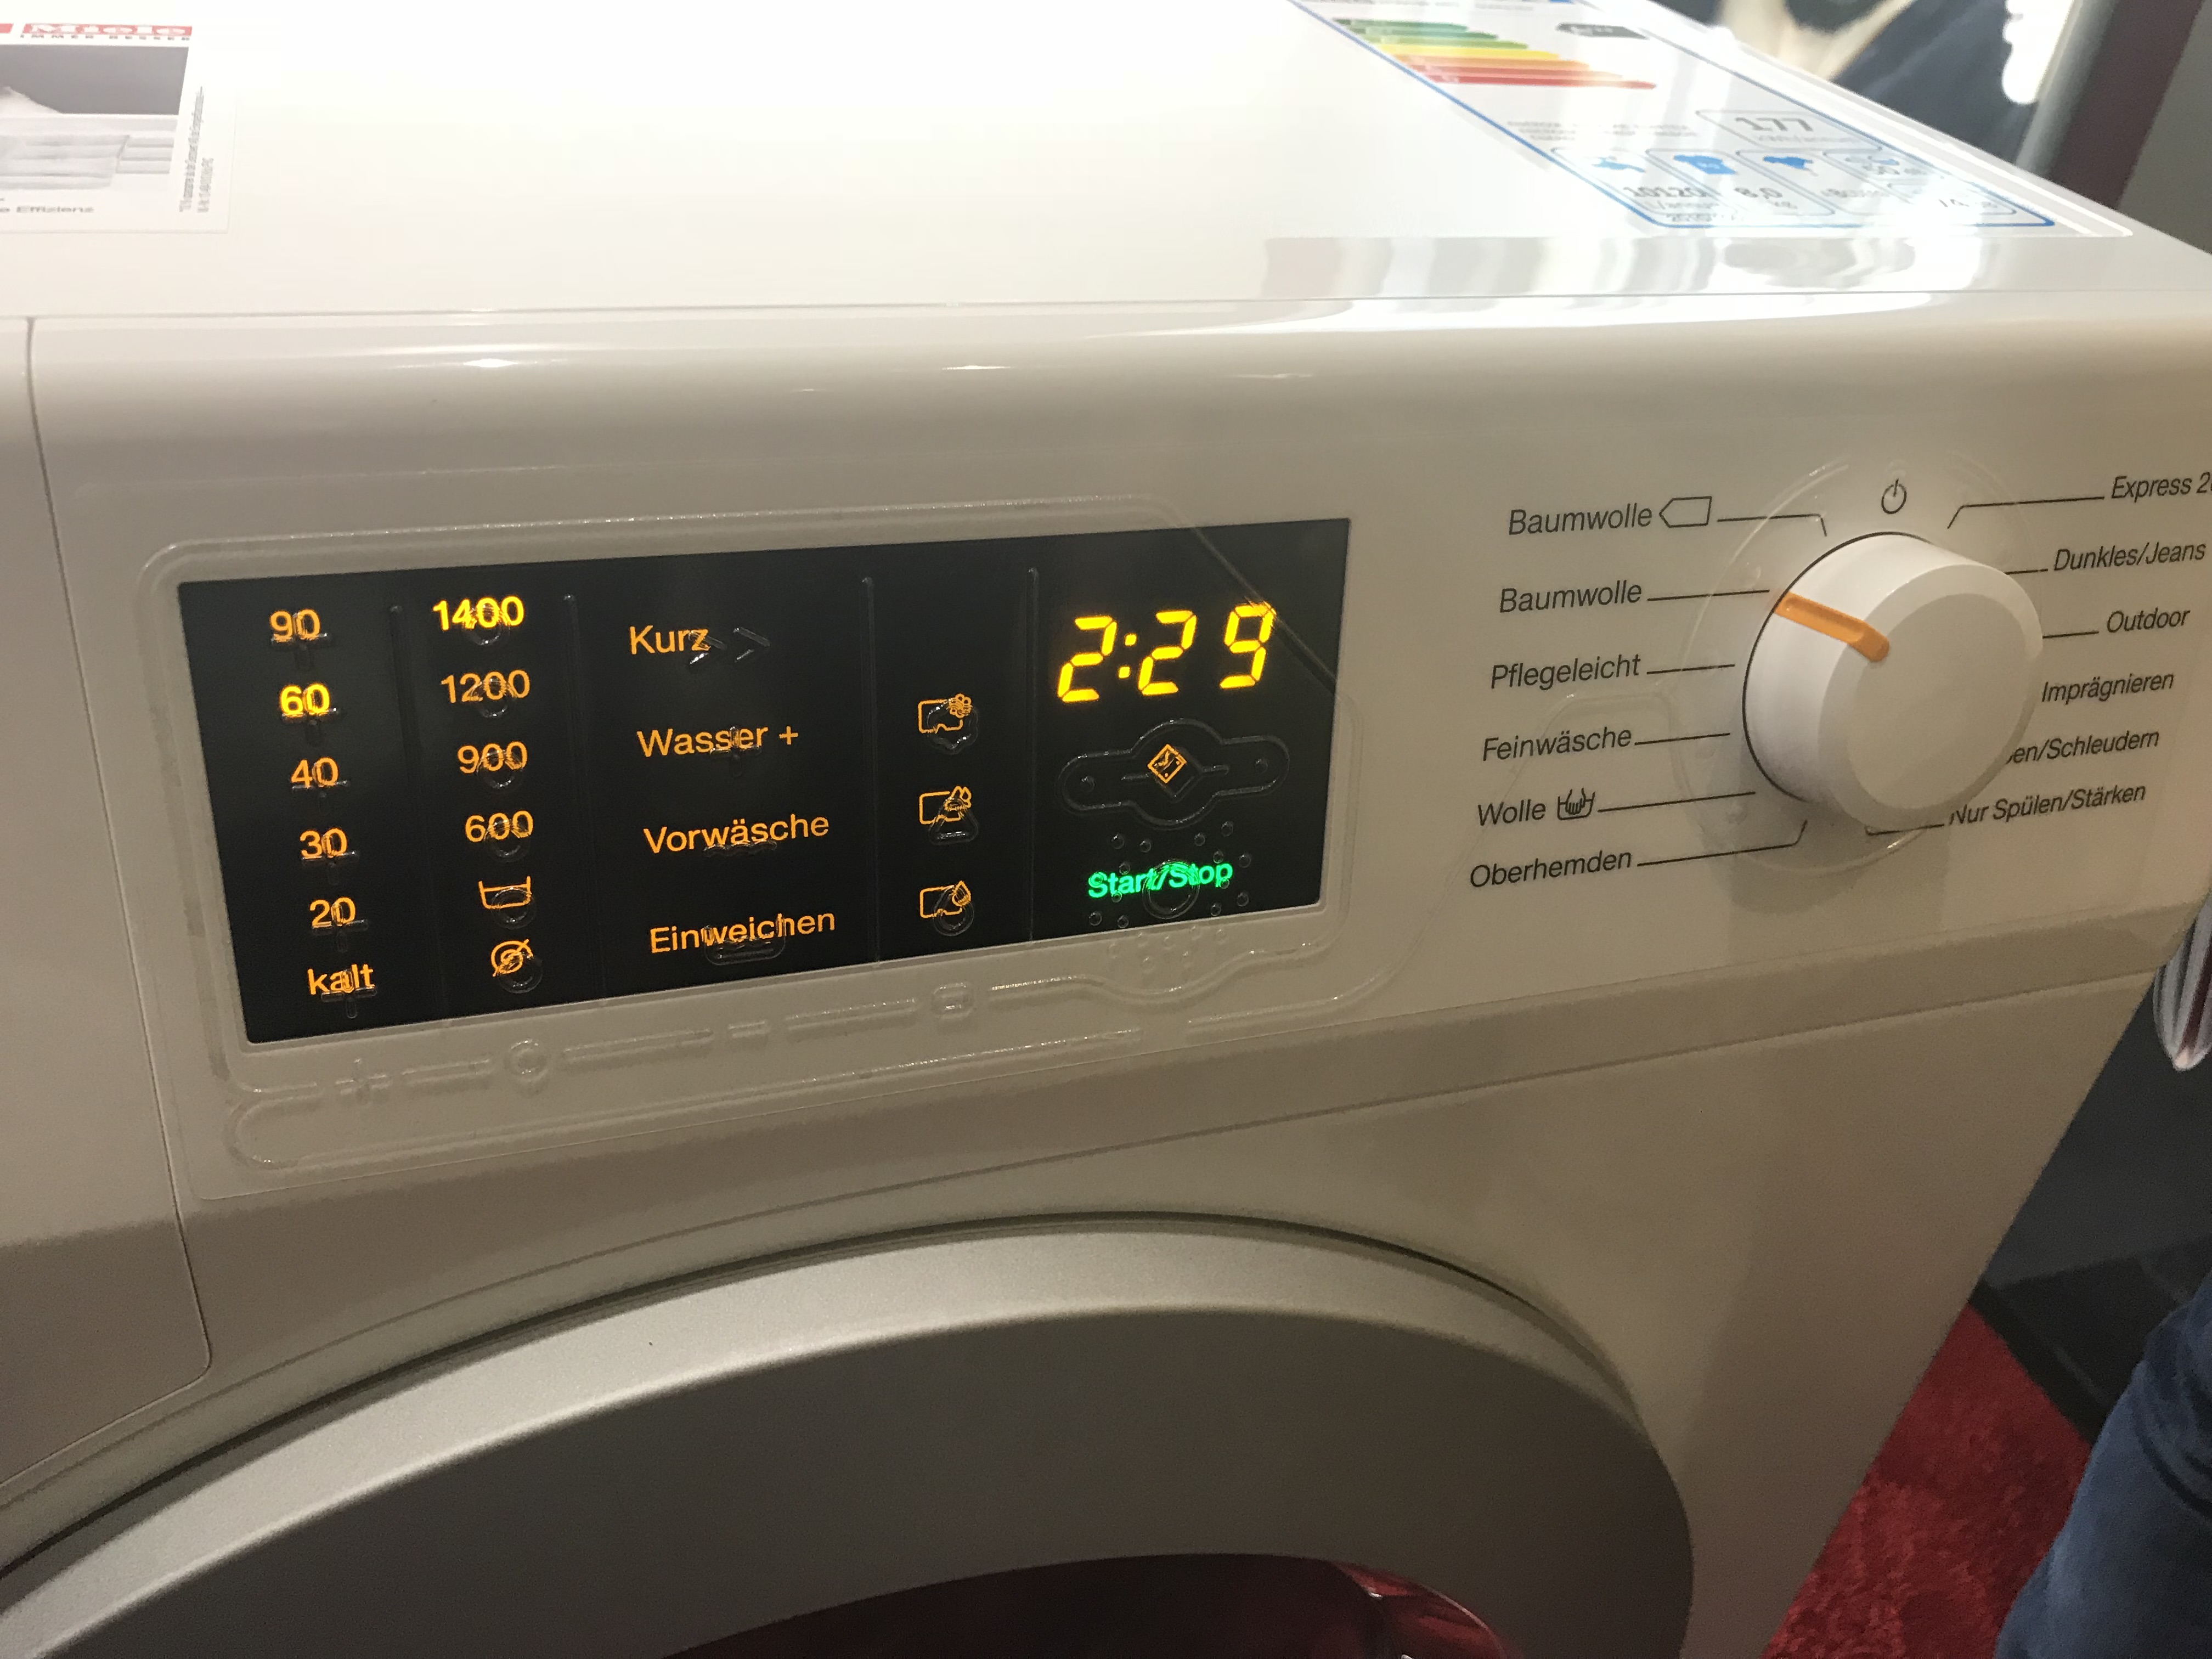 Billede af panelet af tilgængelig Miele vaskemaskine